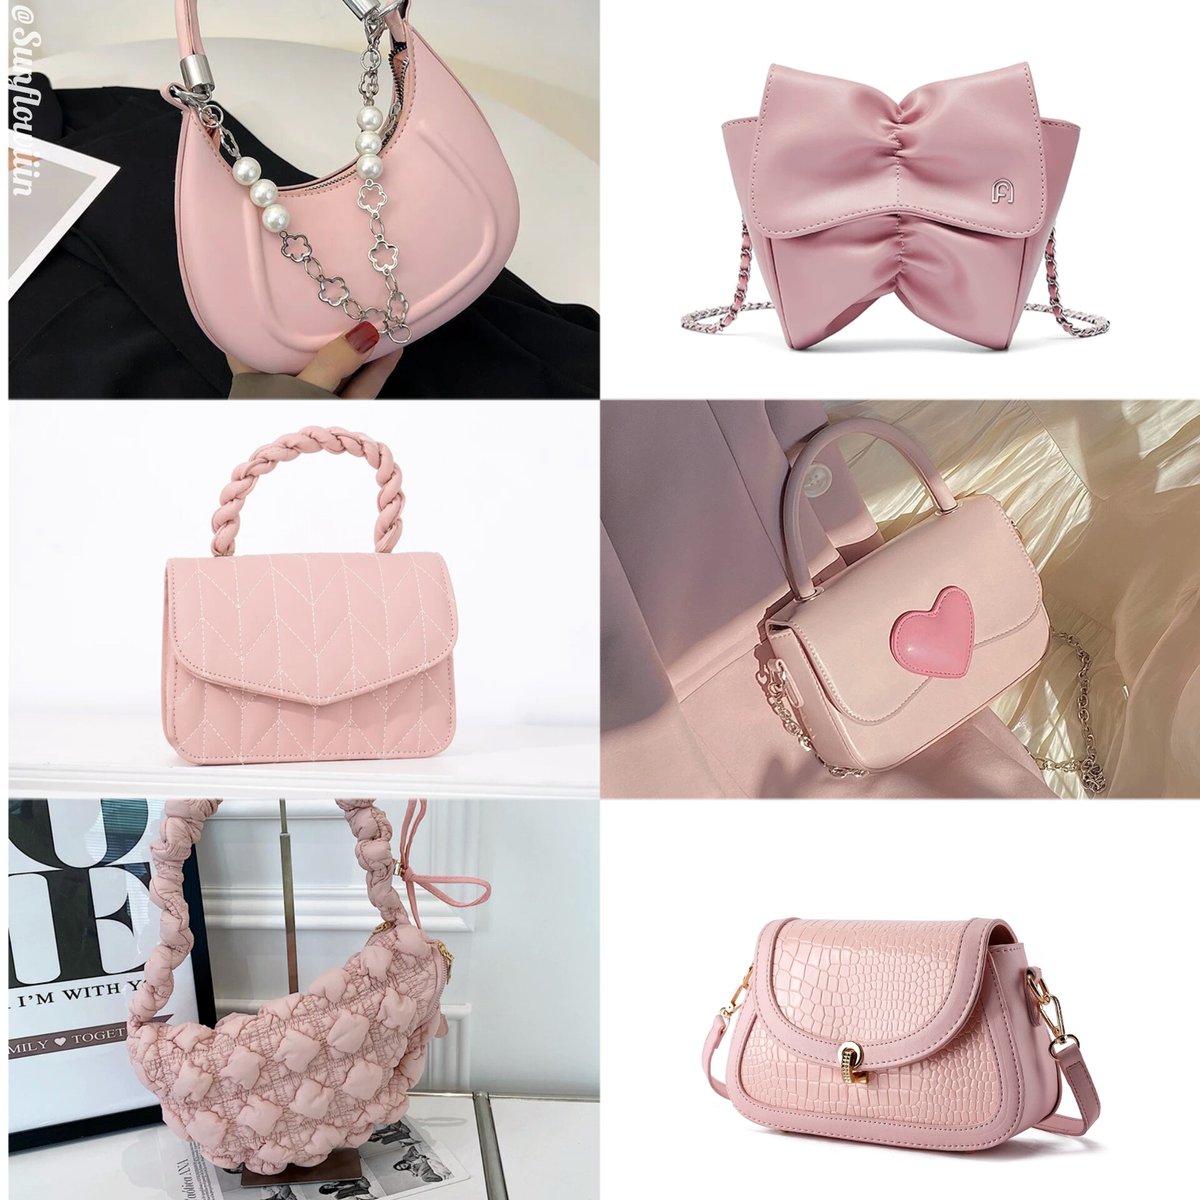 Soft pink series bag

slingbag | handbag | shoulder bag
a thread—